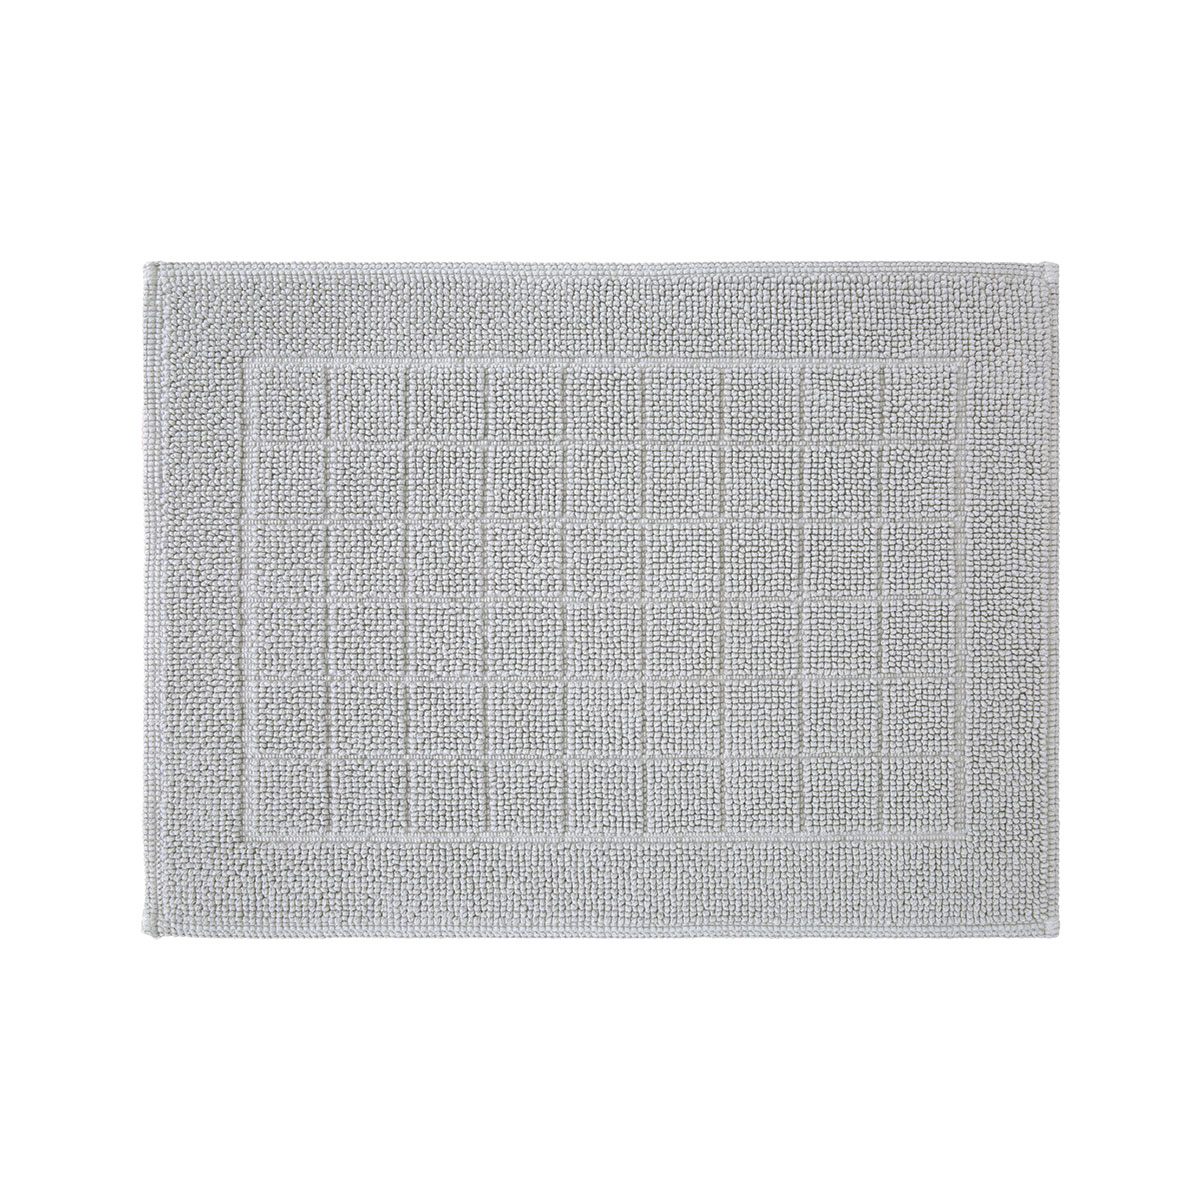 Tapis de bain coton peigné Ciment 60 x 90 cm